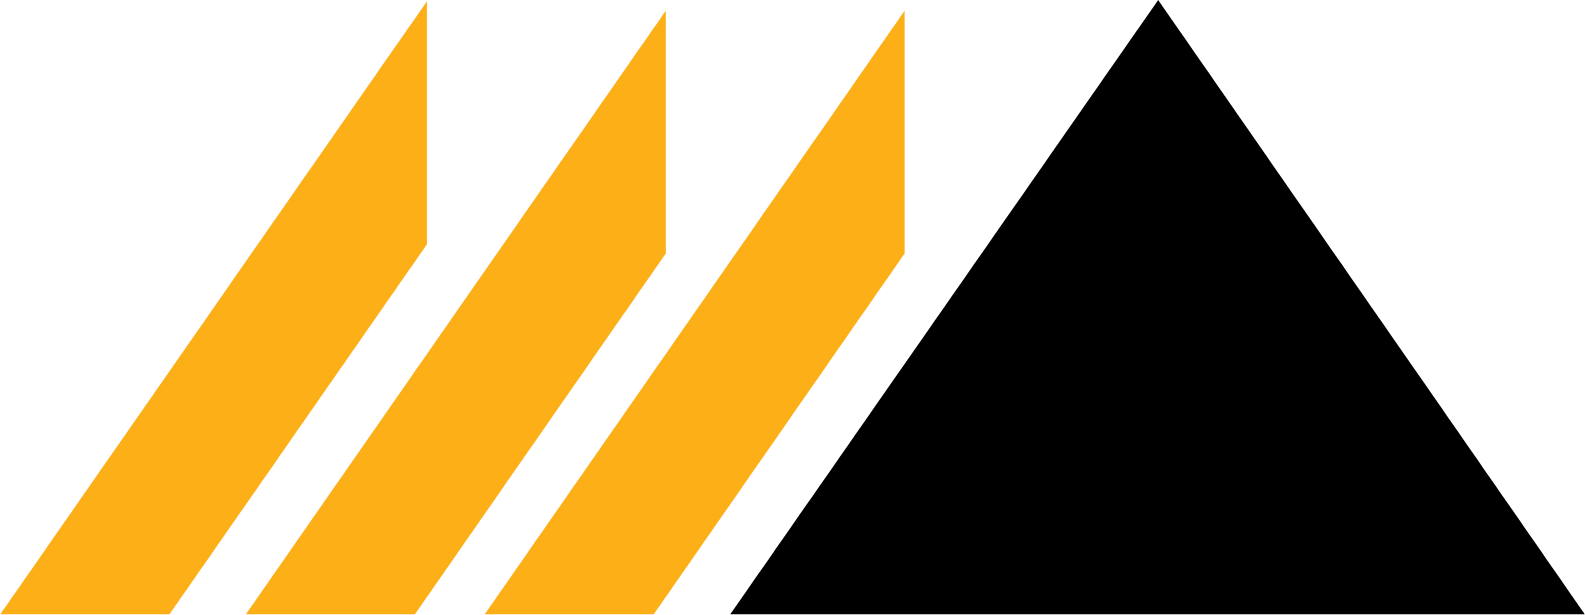 DRDGOLD logo (transparent PNG)